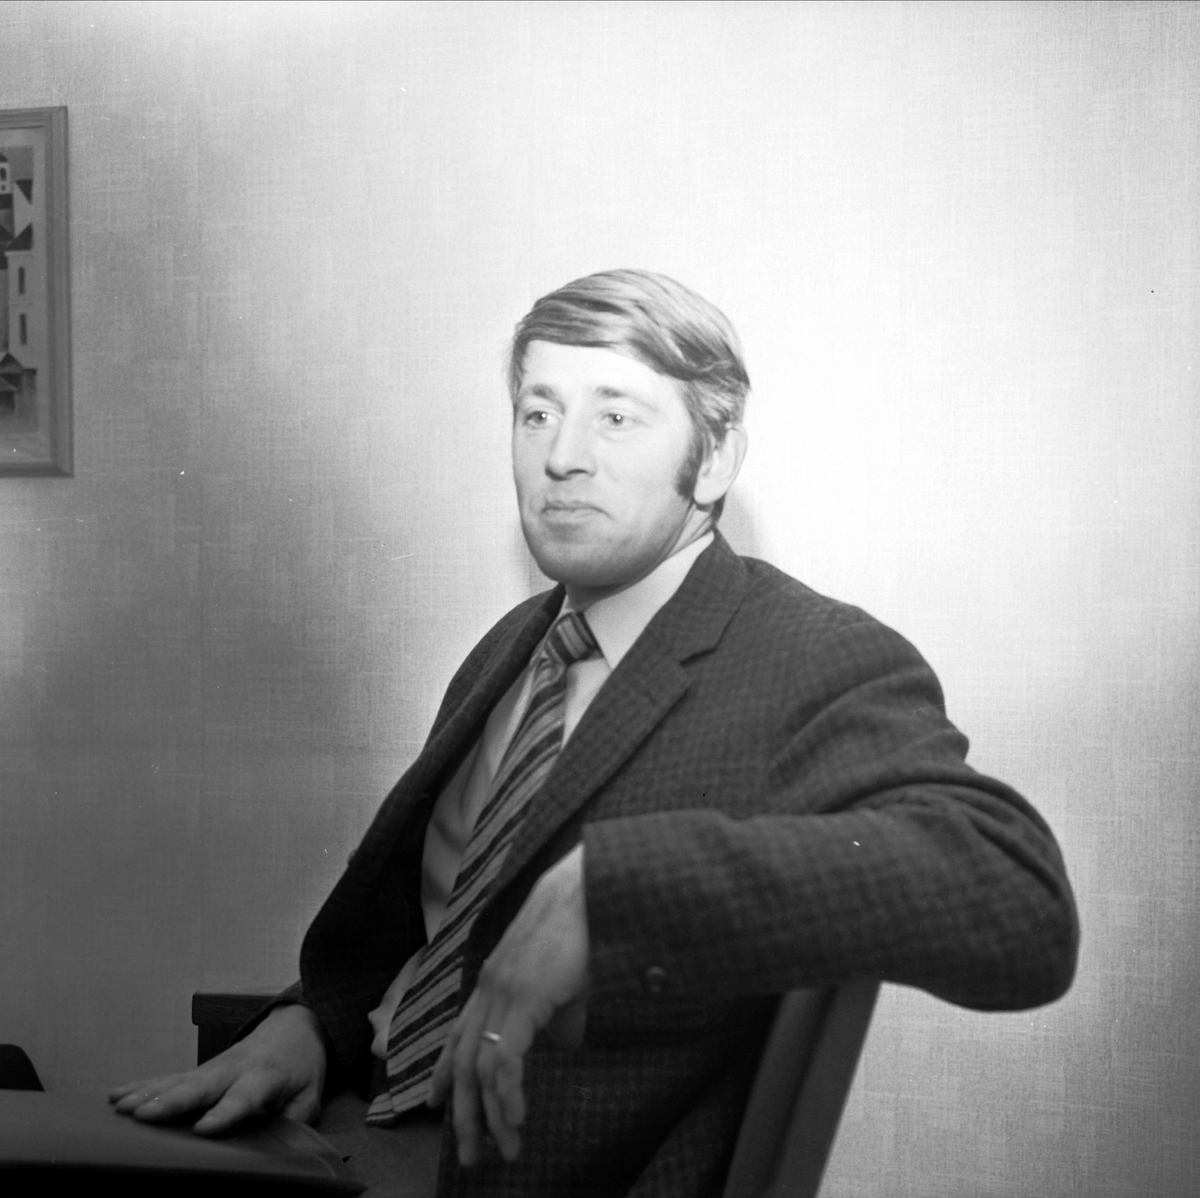 Läkaren Mats Holmer, Söderfors, Uppland 1973